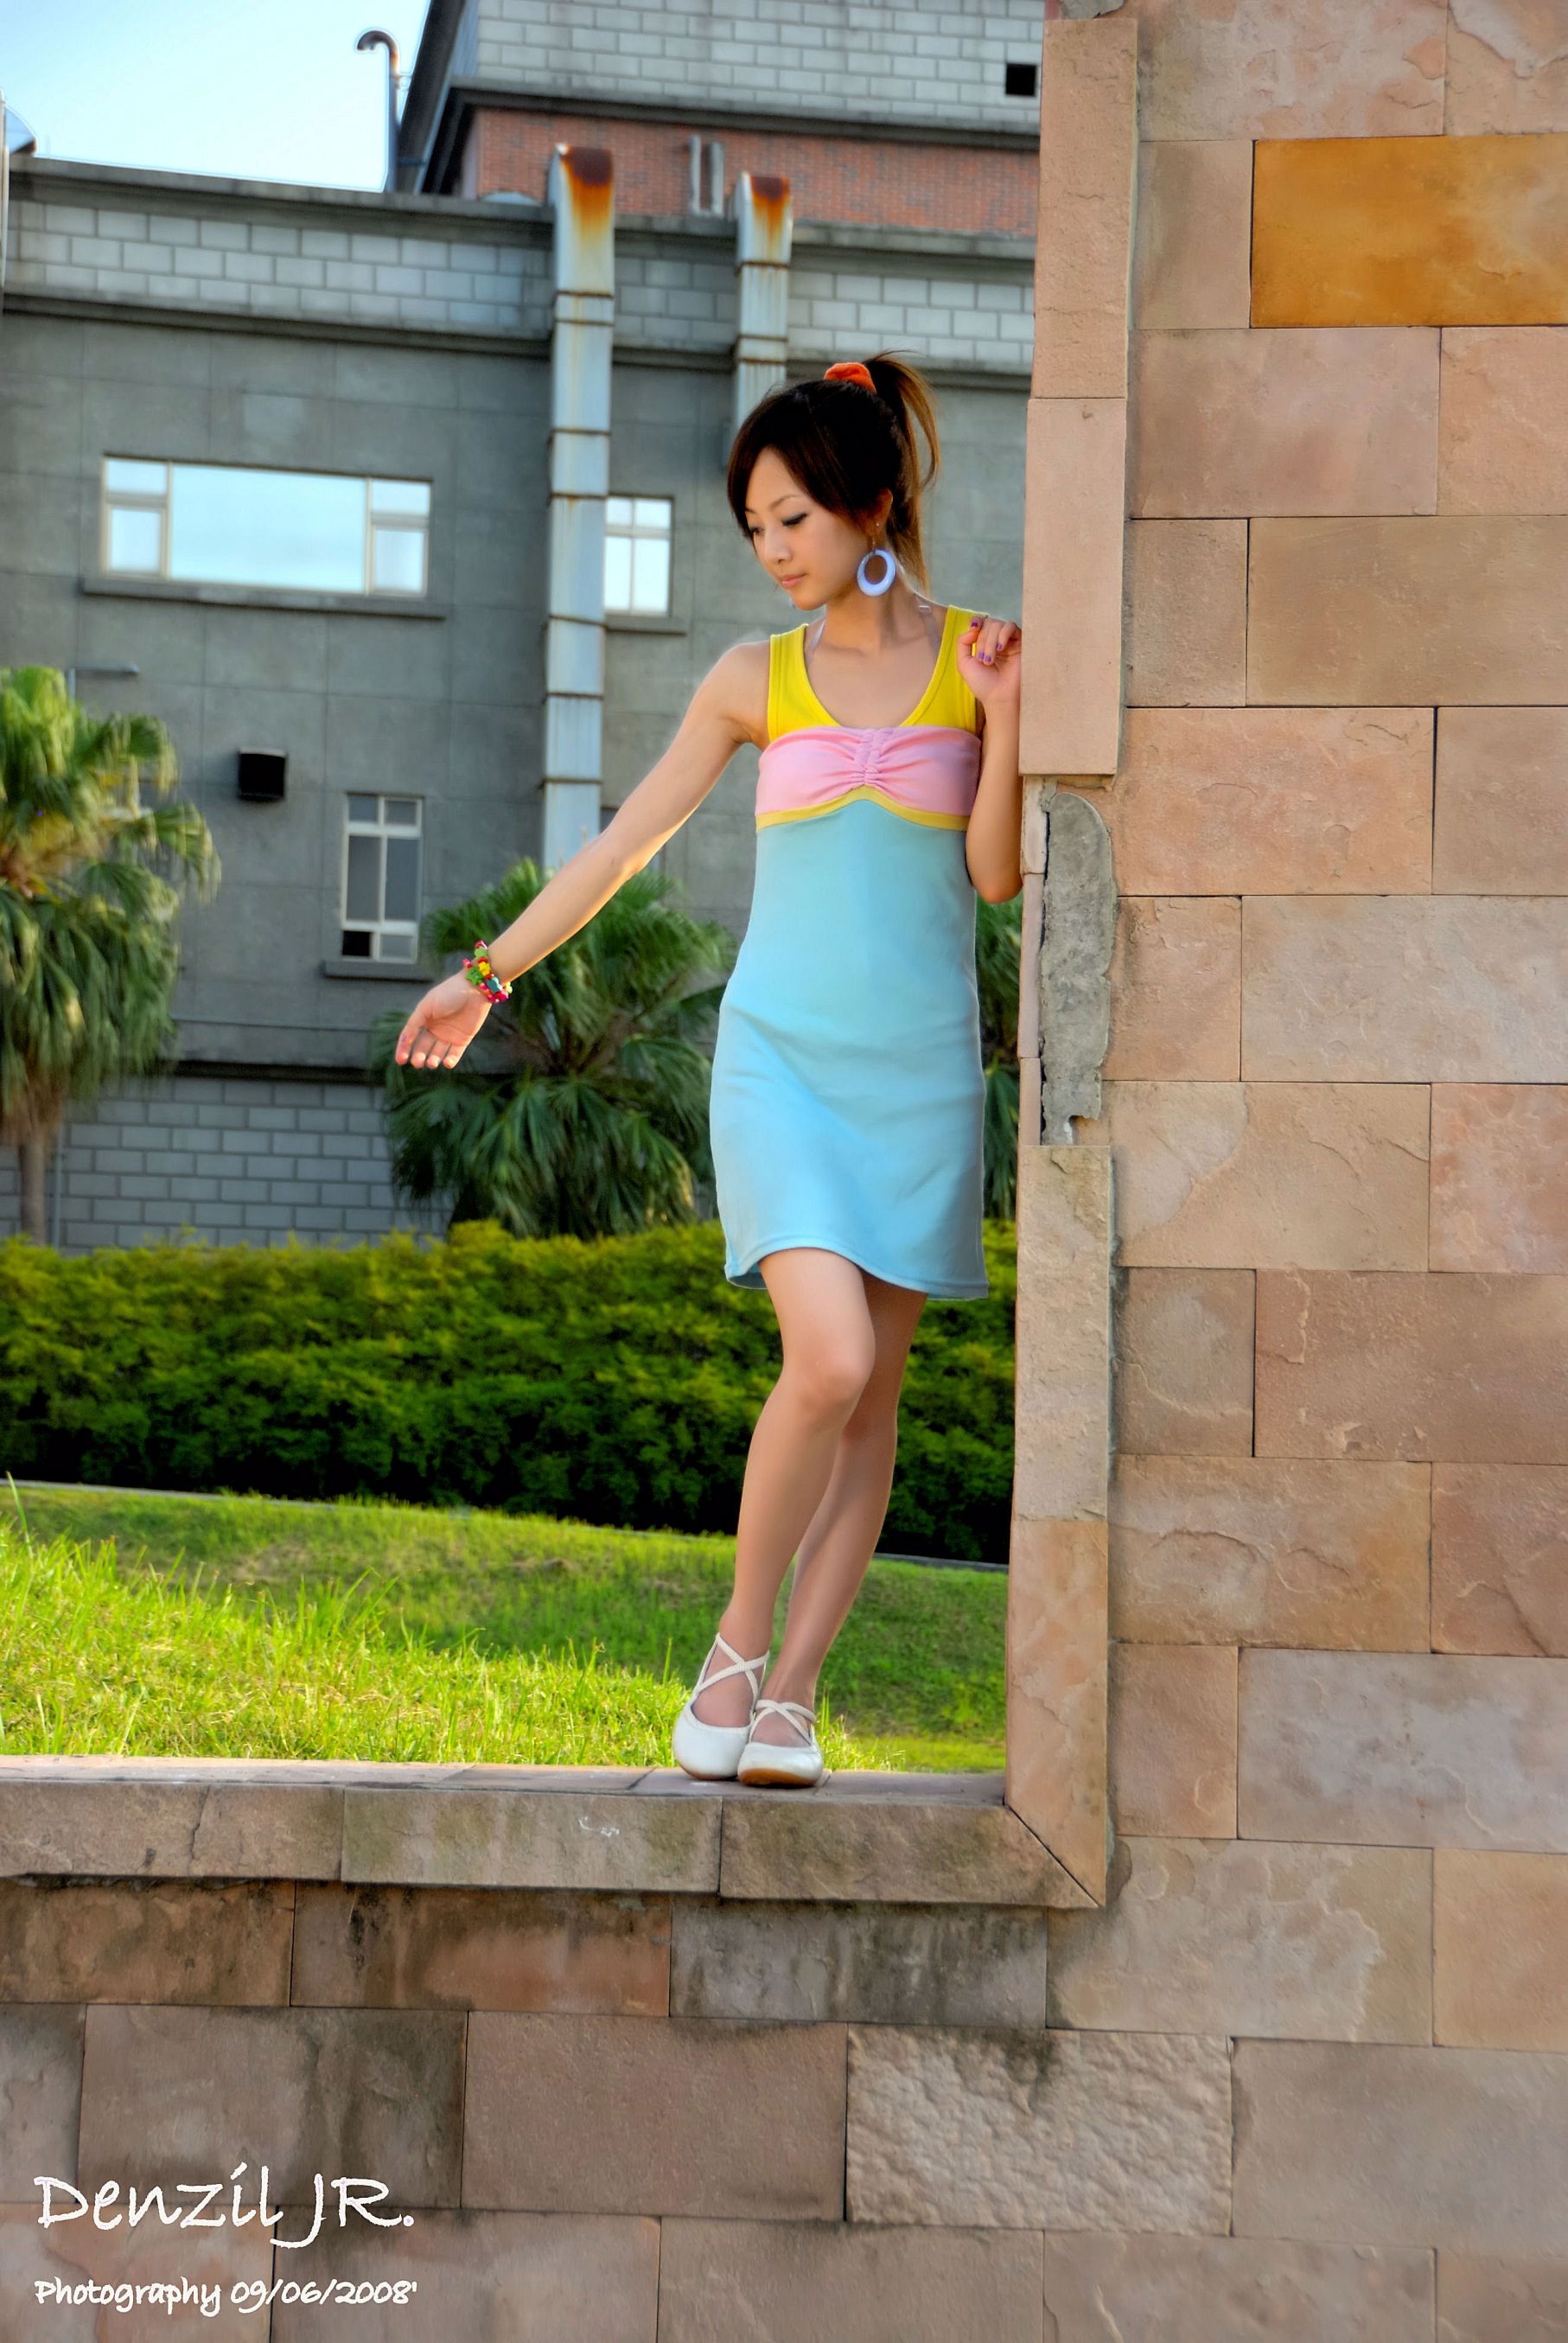 Taiwan Obst MM "Schöne Frucht mit Barbie-Kleidung" Riemenkleider Serie